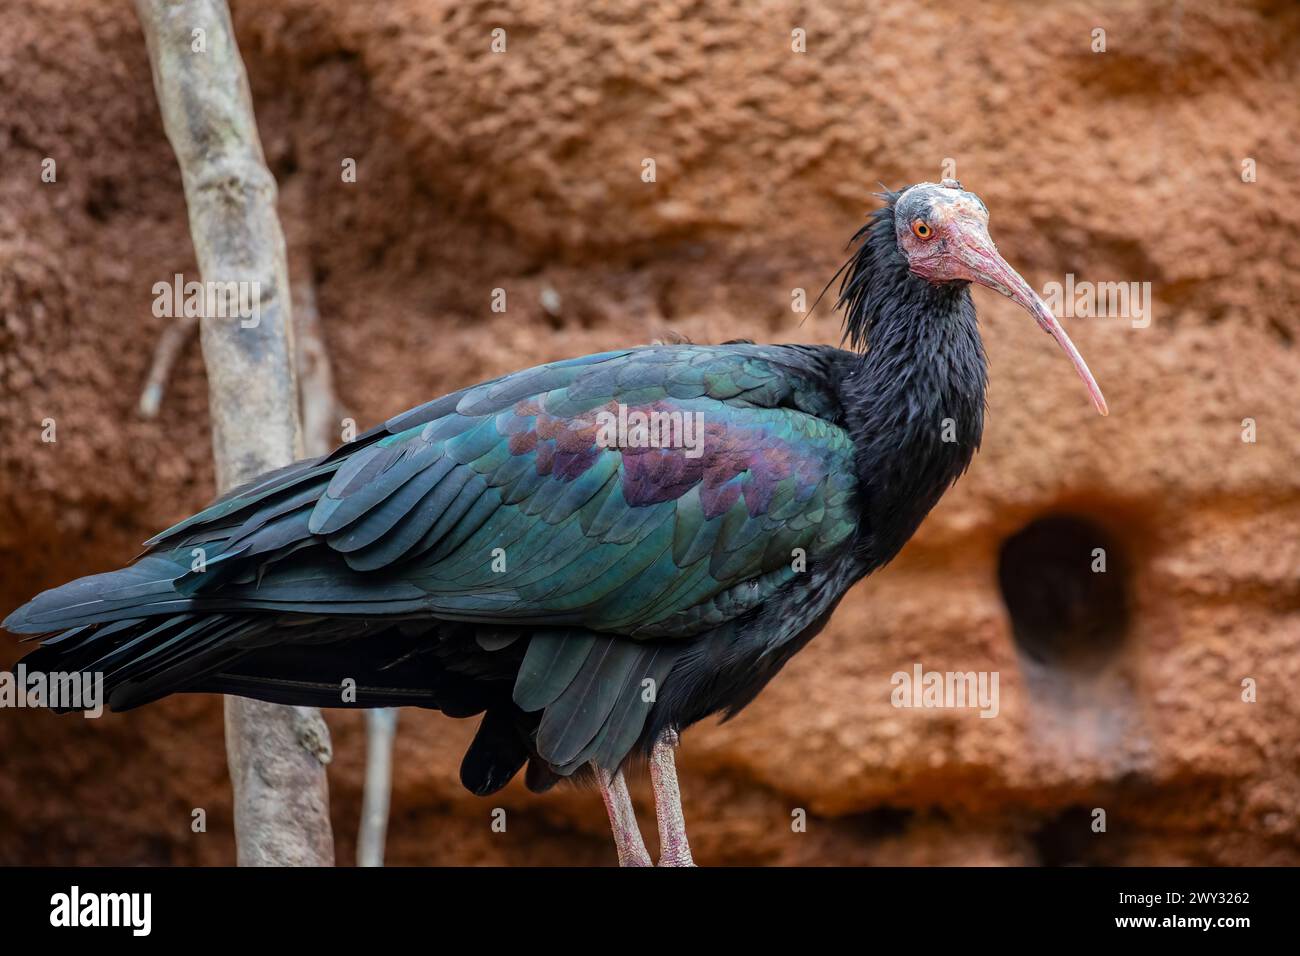 L'ibis Northern Bald si erge da solo di fronte alla scogliera. Il piumaggio è nero, con iridescenza verde-bronzo e viola, un ruffe voluminoso sull'uccello Foto Stock